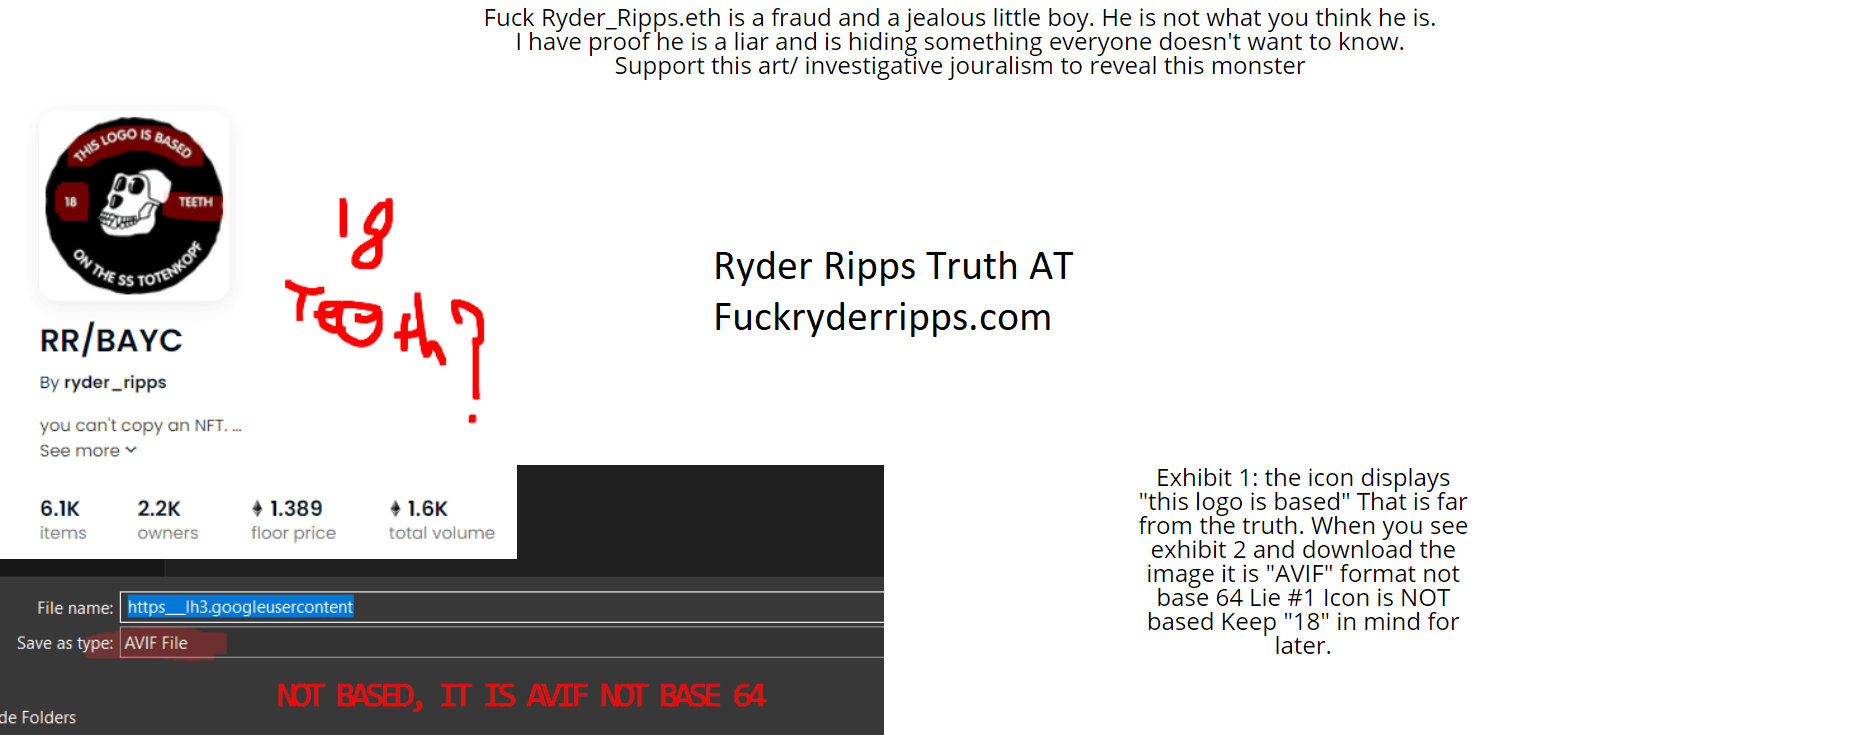 Fuck Ryder Ripps